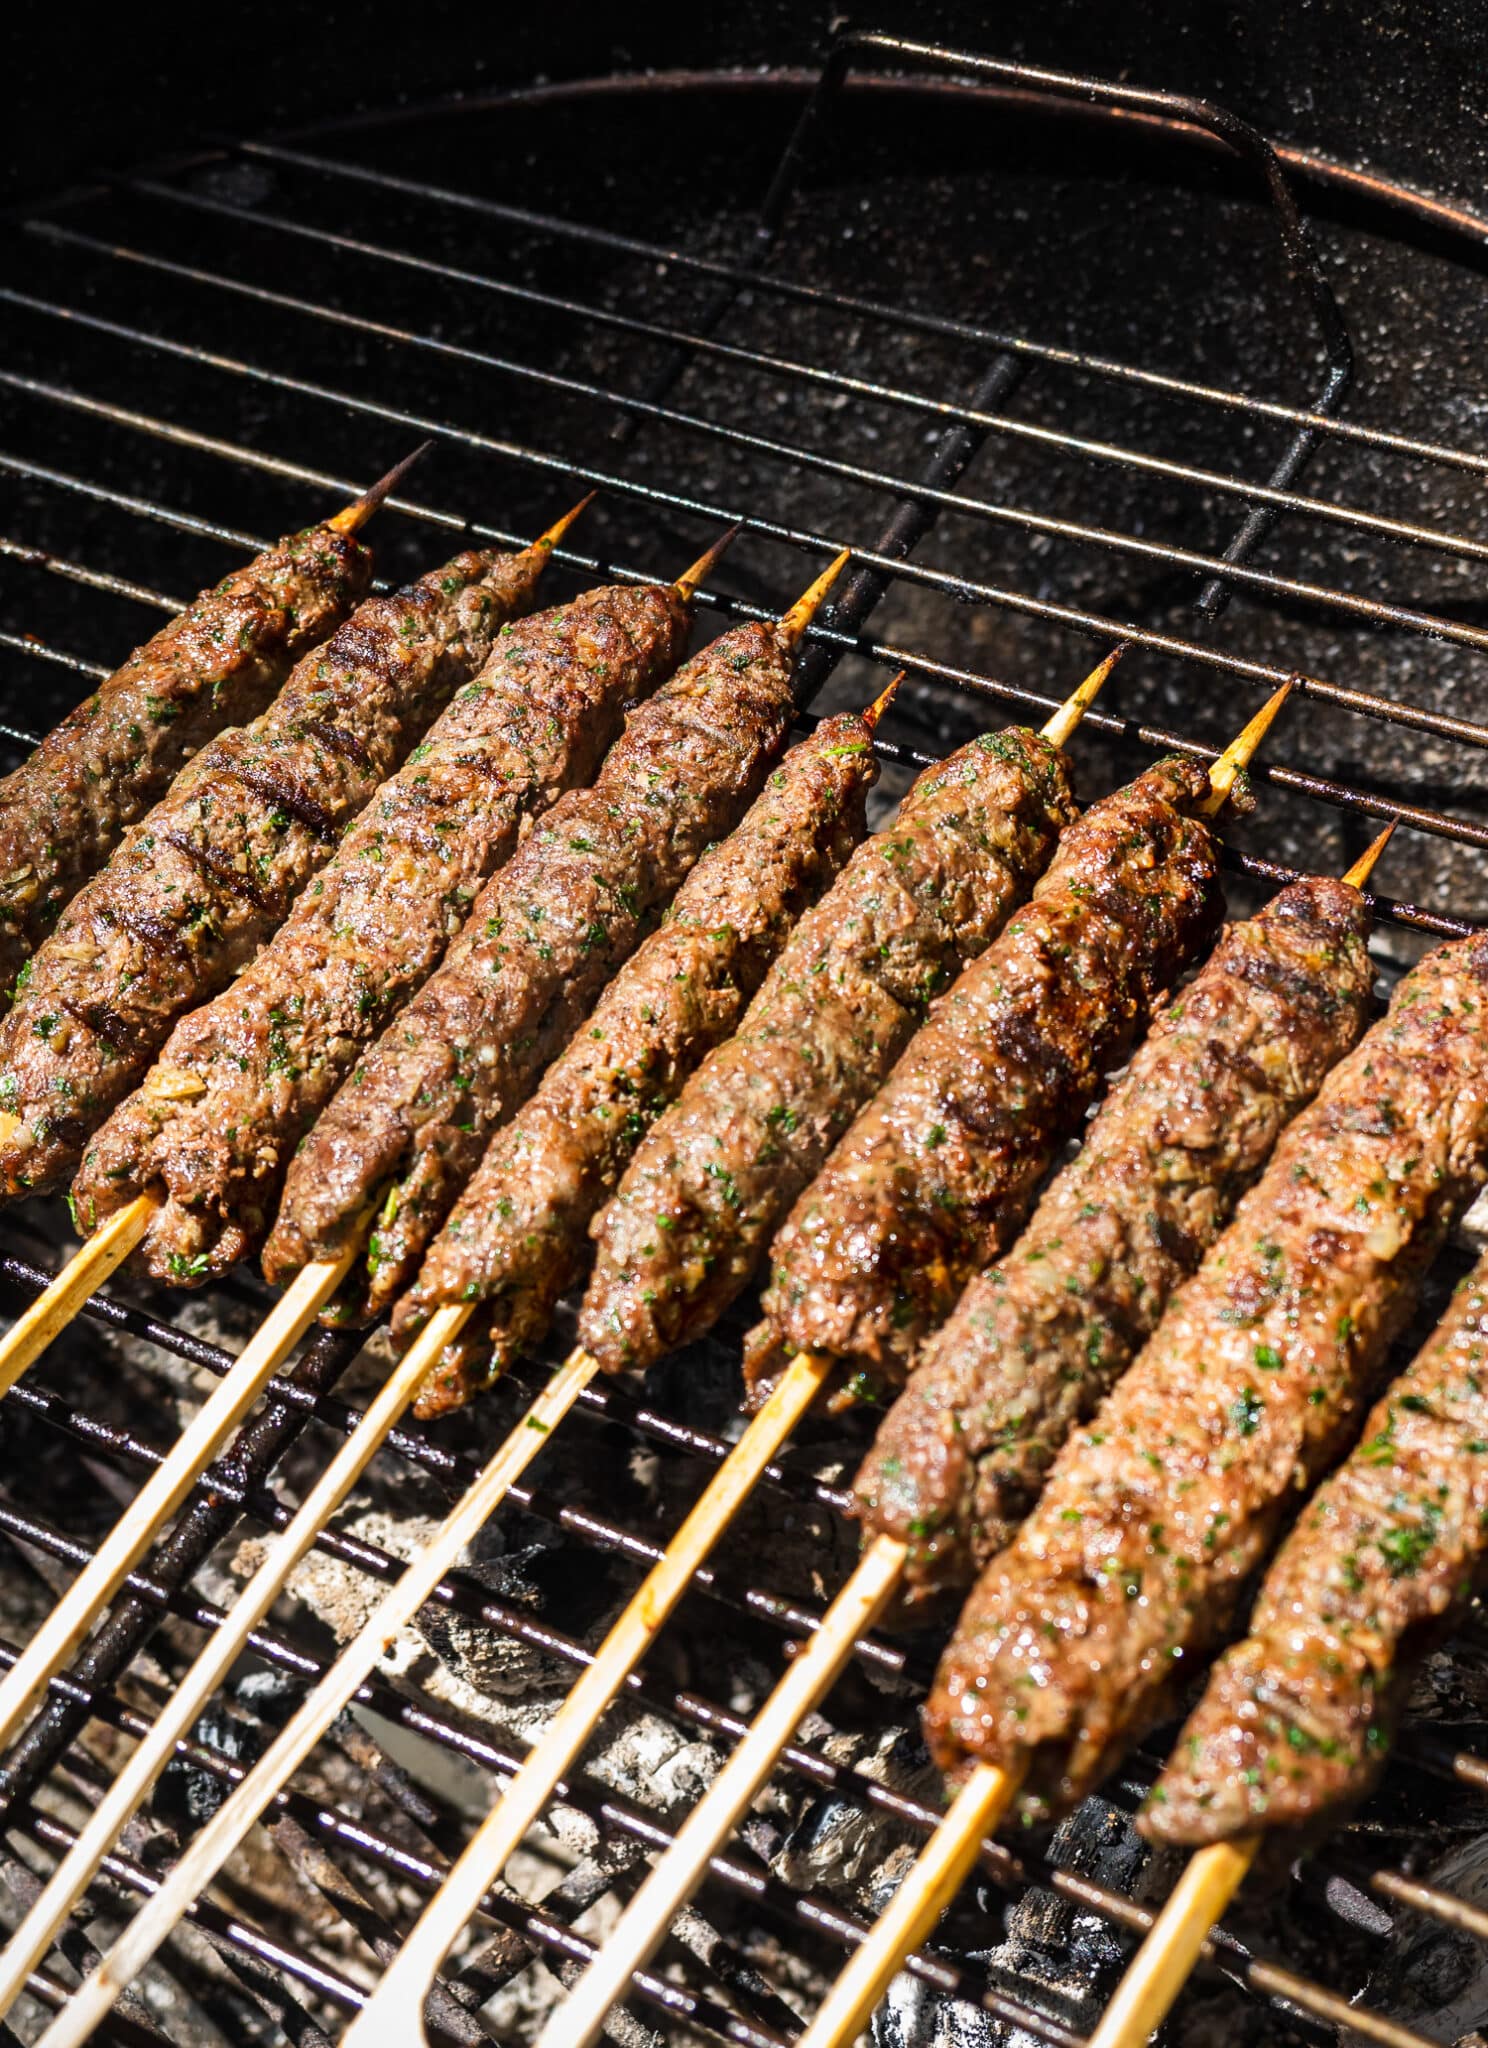 Kafta kebabs on the grill.